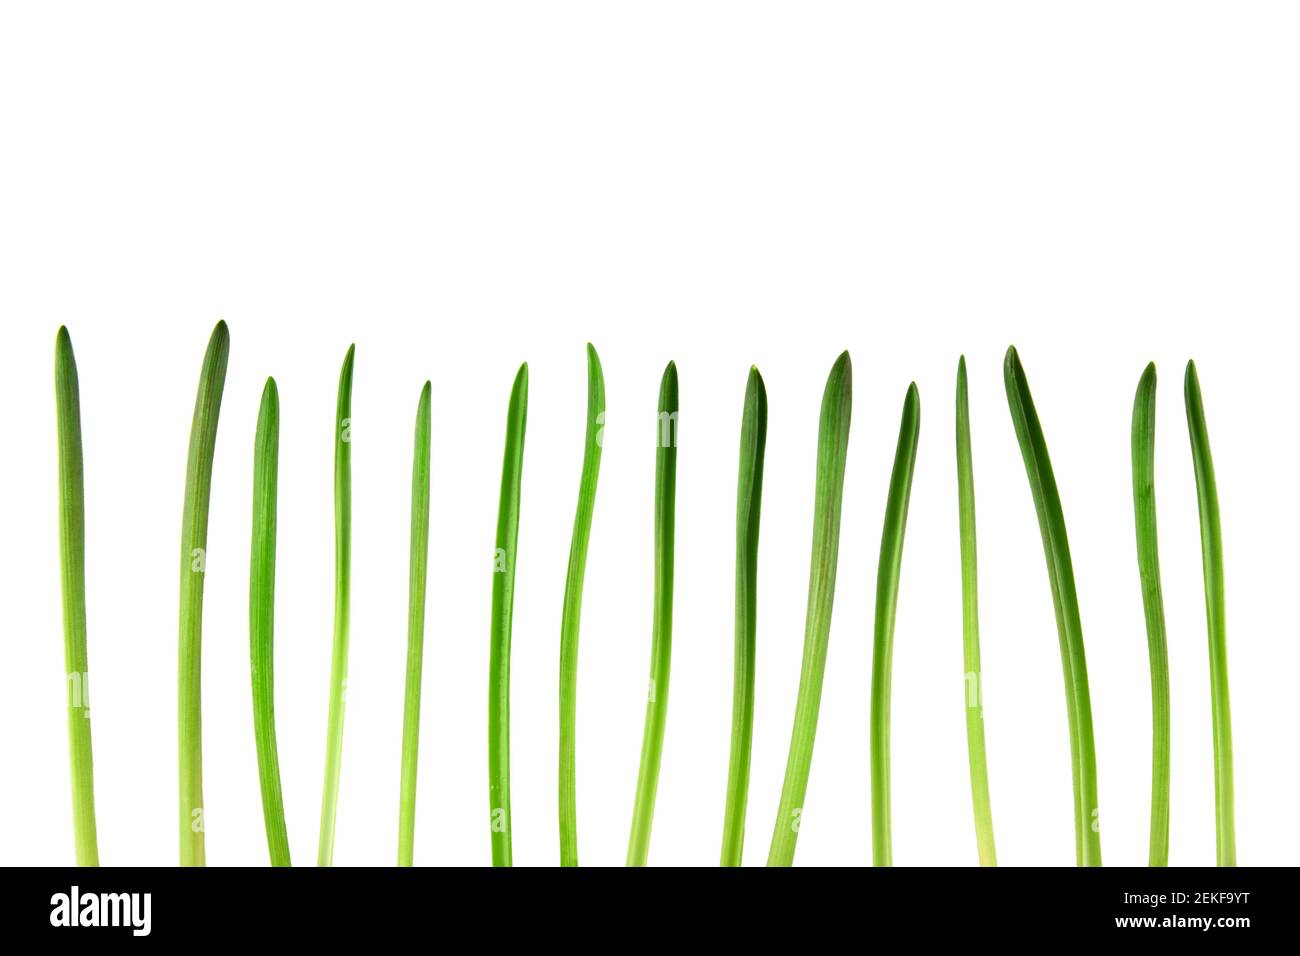 Immagine isolata di un gambo di erba verde. Concetto di primavera Foto Stock